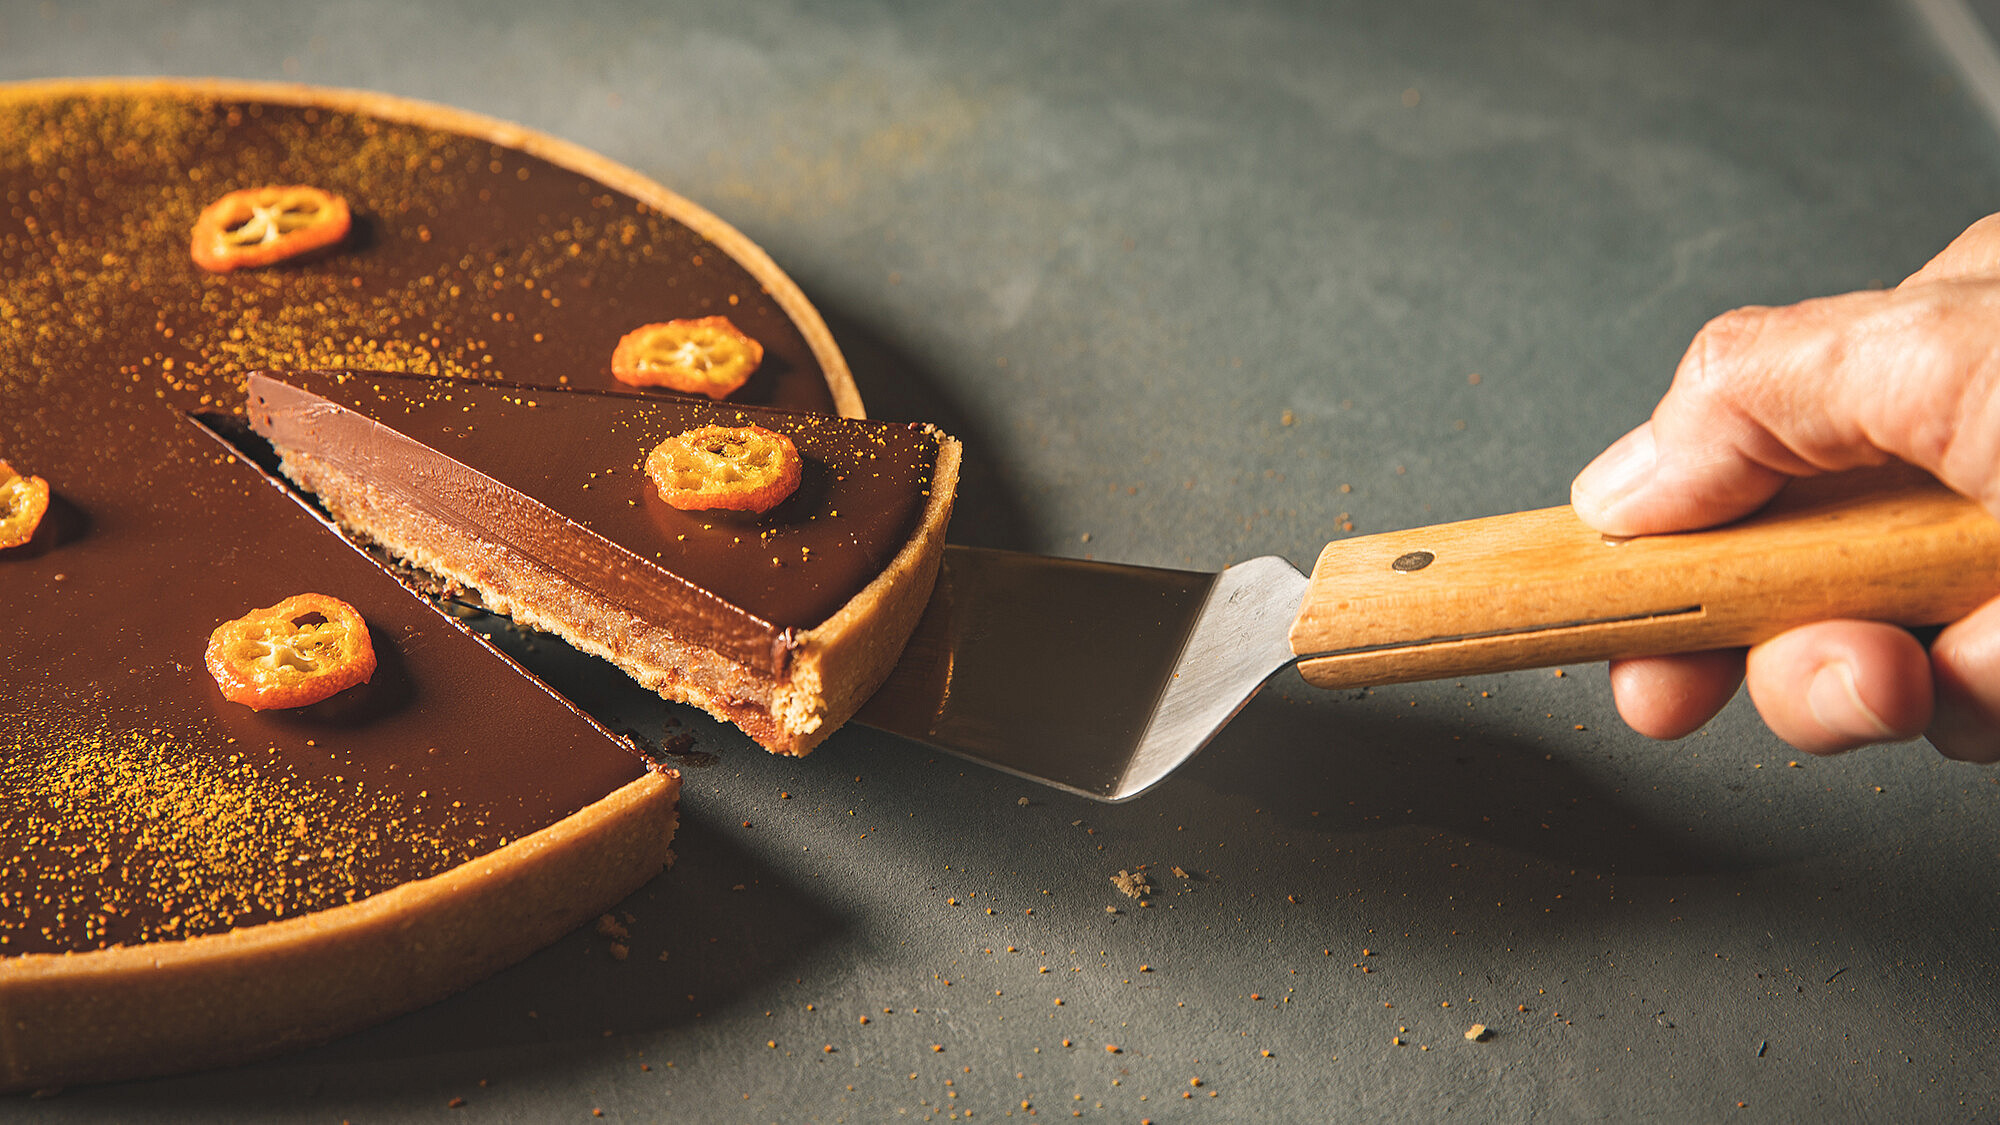 טארט מרציפן, תפוז ושוקולד של השף-קונדיטורית מאי ישורון | צילום: שני בריל, סטיילינג: עינב רייכנר